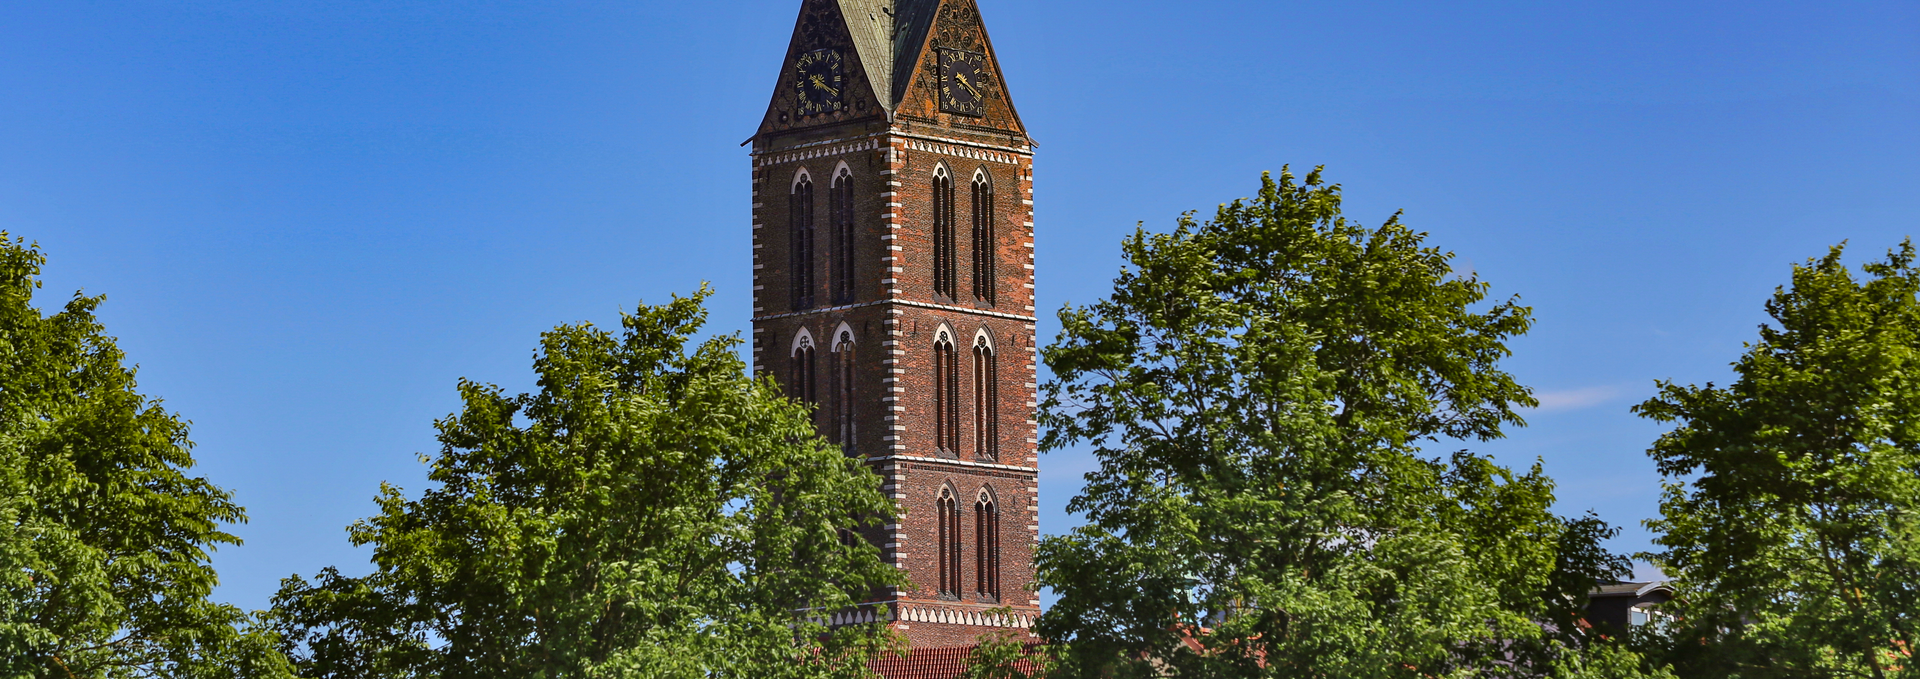 St. Mary's Church Tower Wismar, © TMV/Gohlke